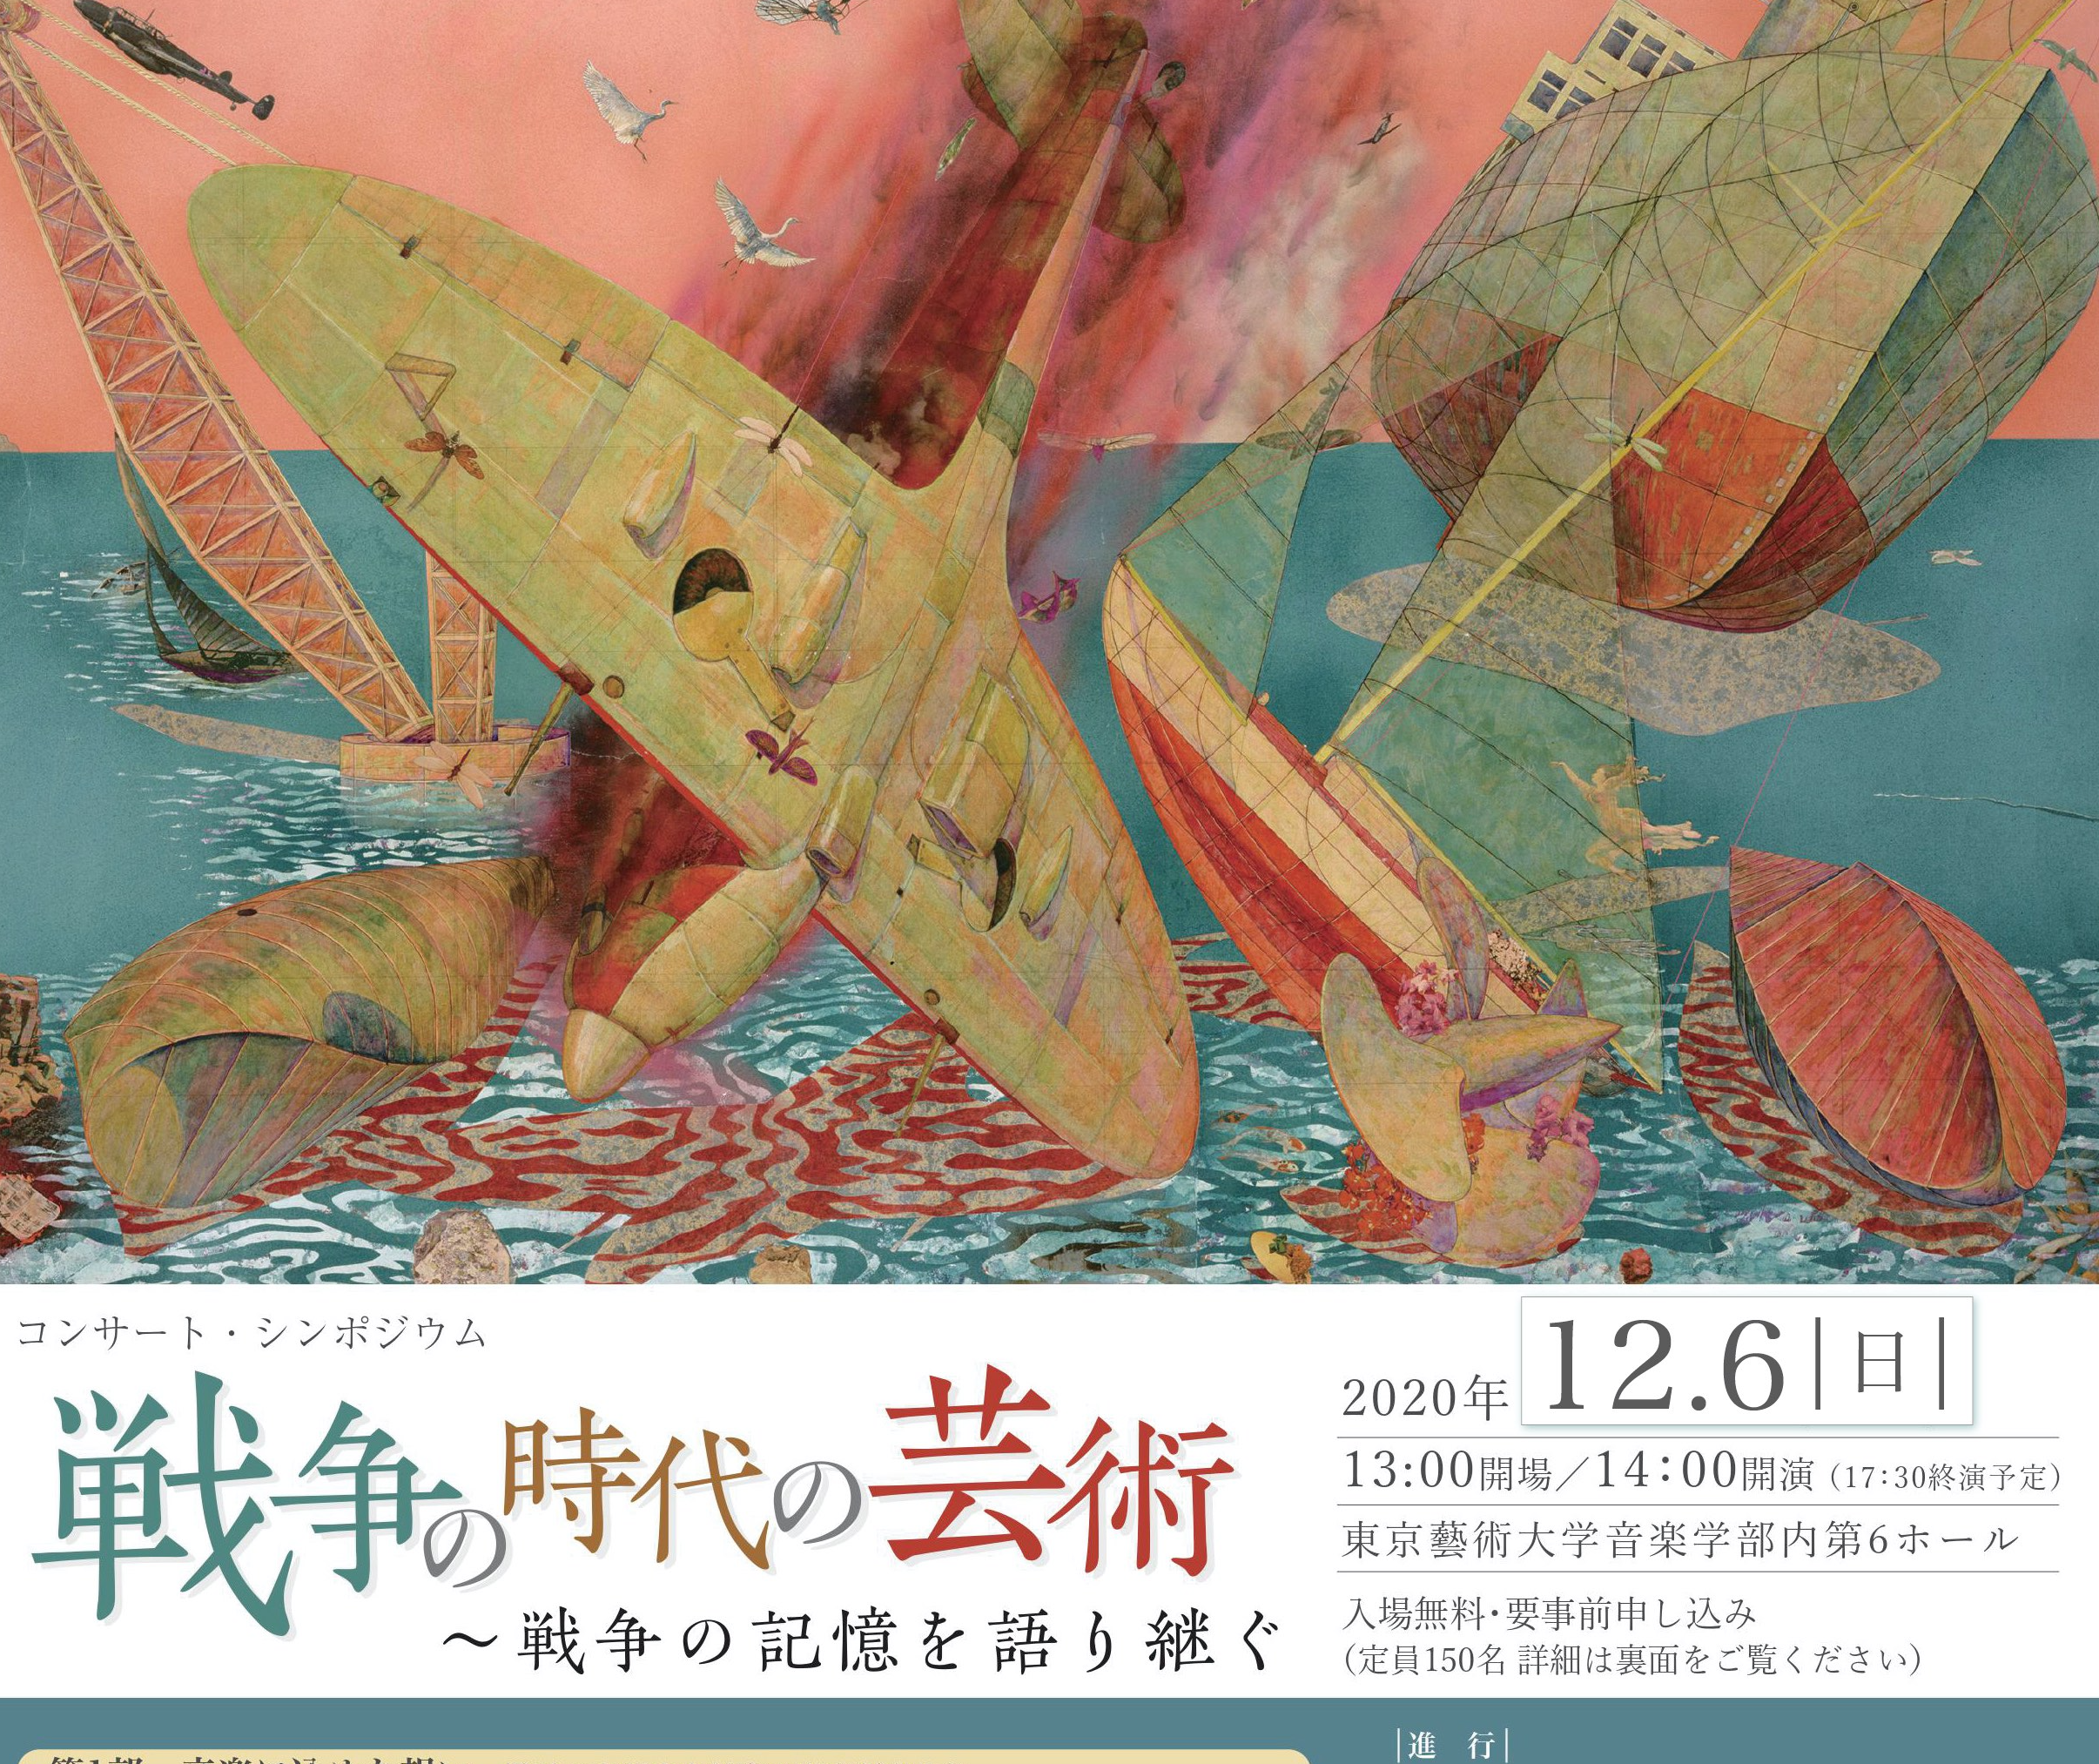 コンサート・シンポジウム「戦争の時代の芸術」が12月6日に開催されます